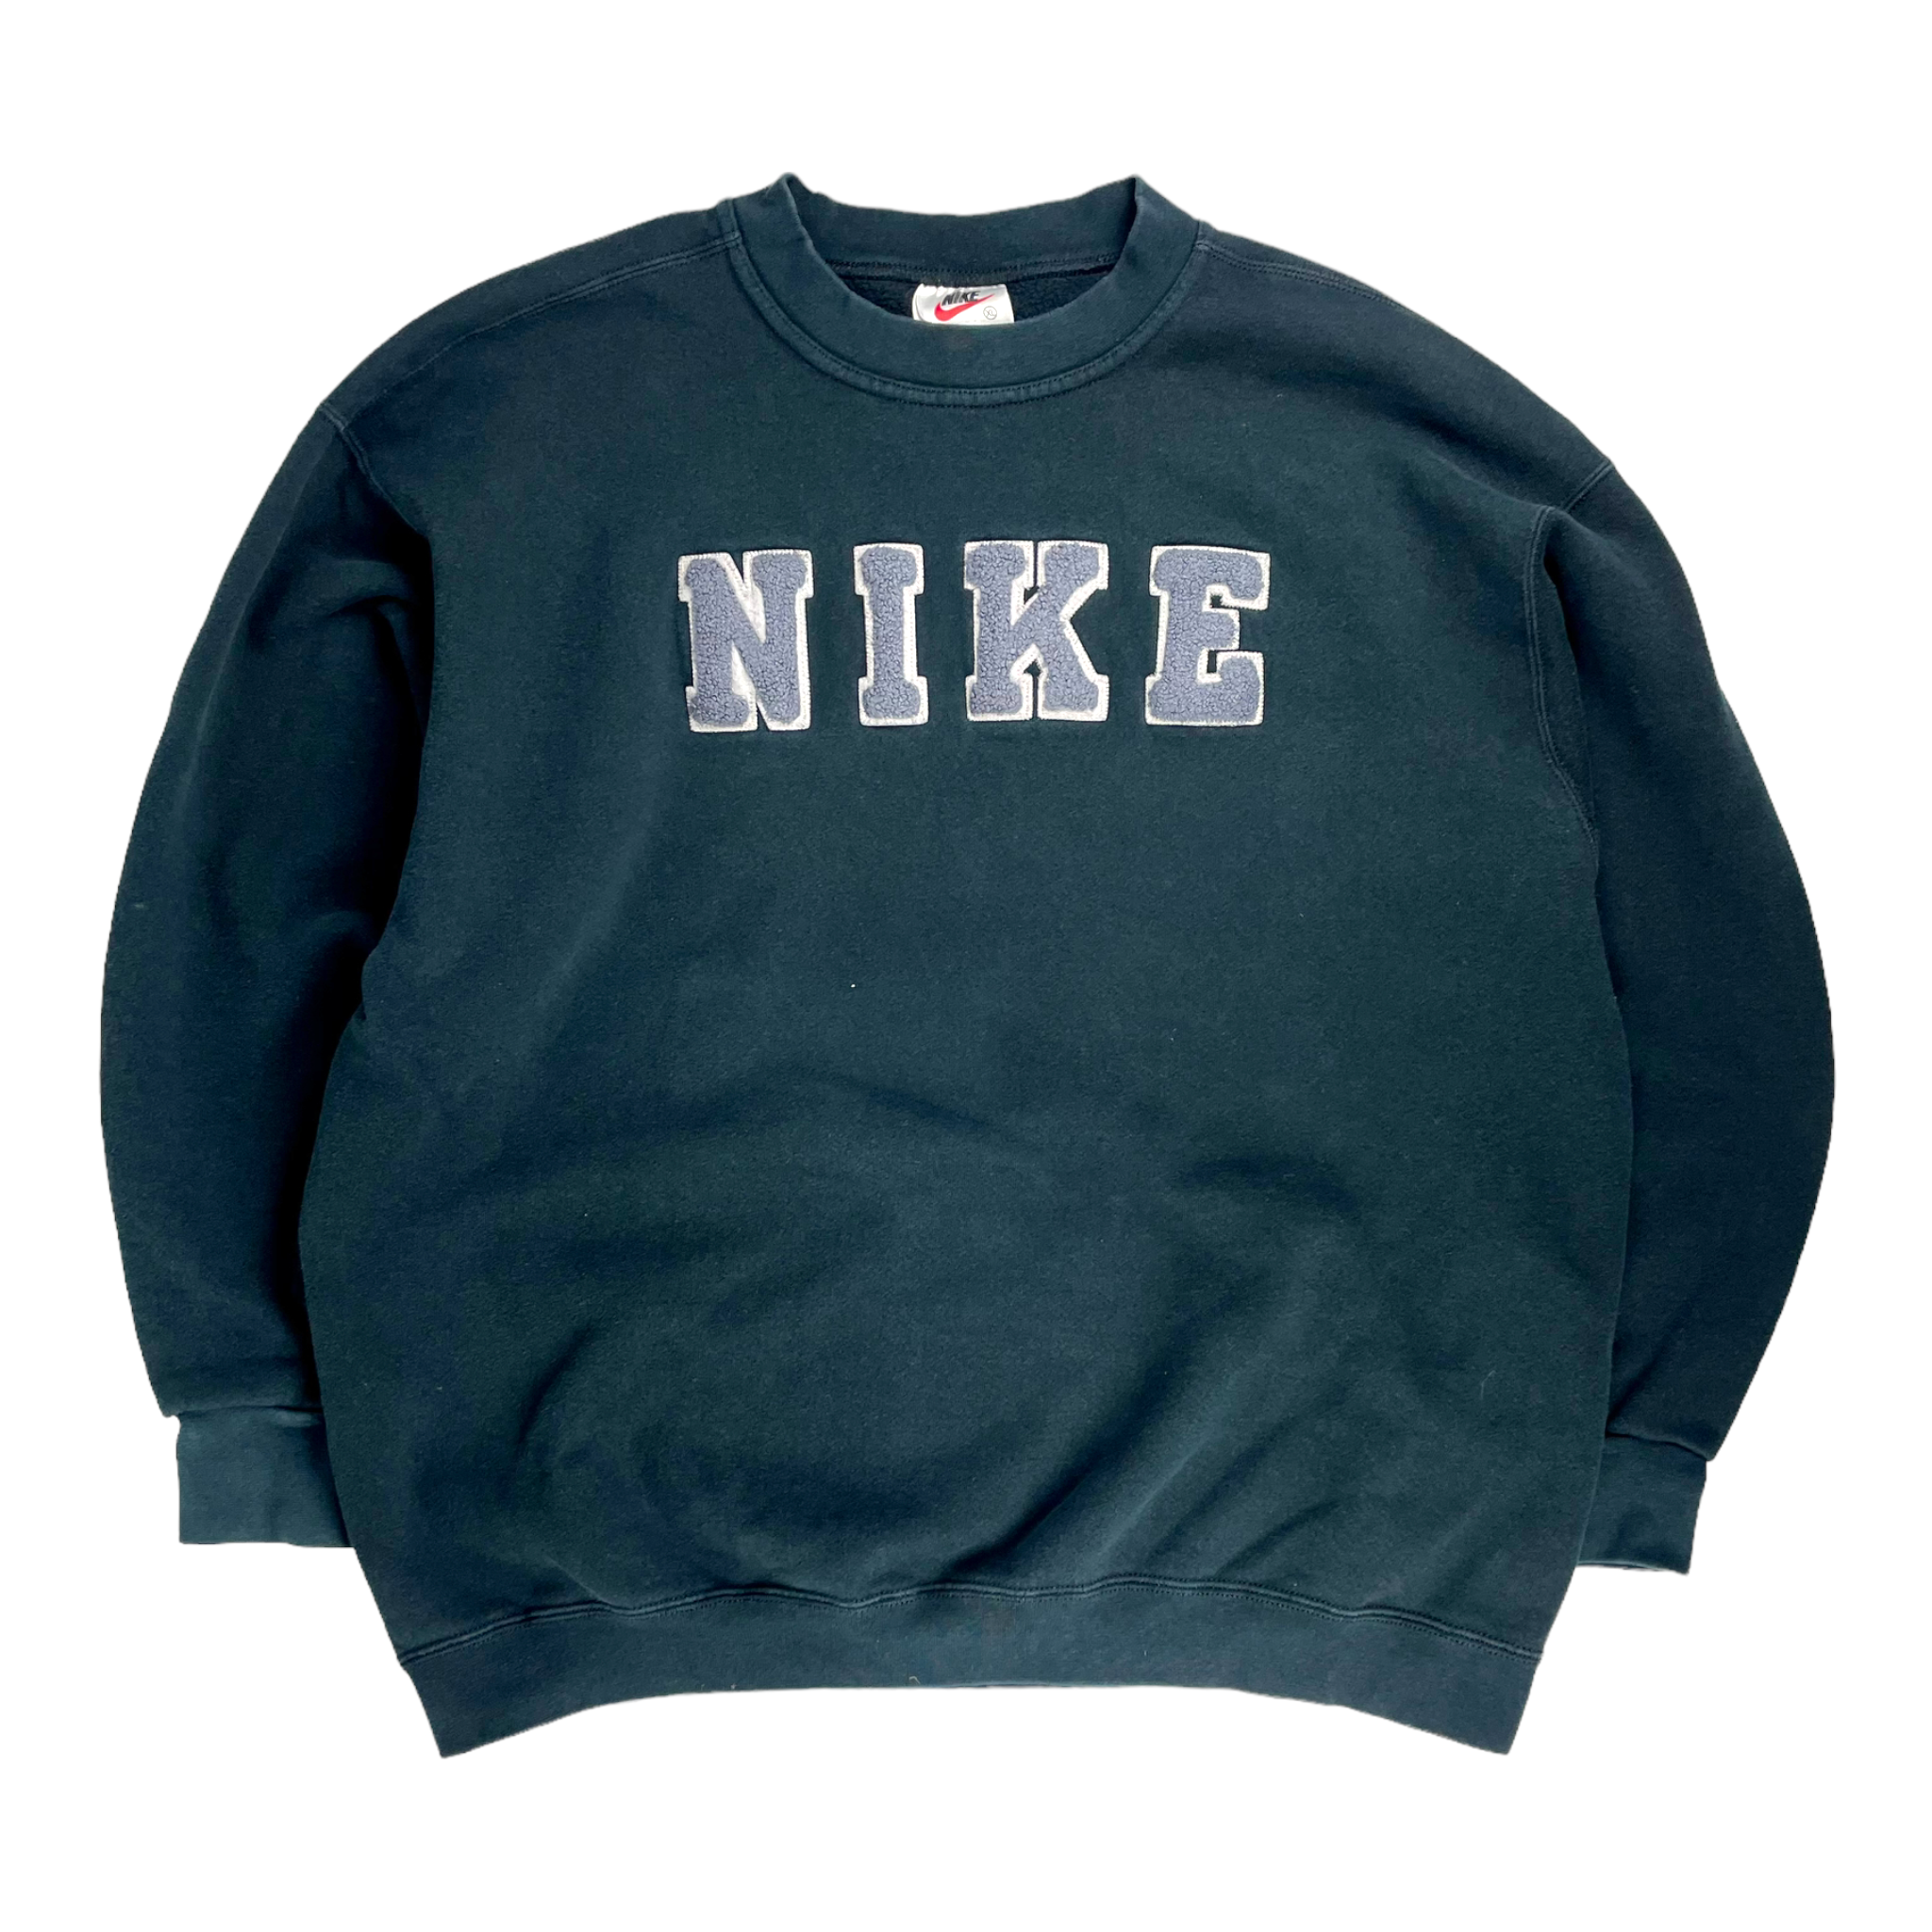 Vintage 90s Nike Sweatshirt - Restorecph